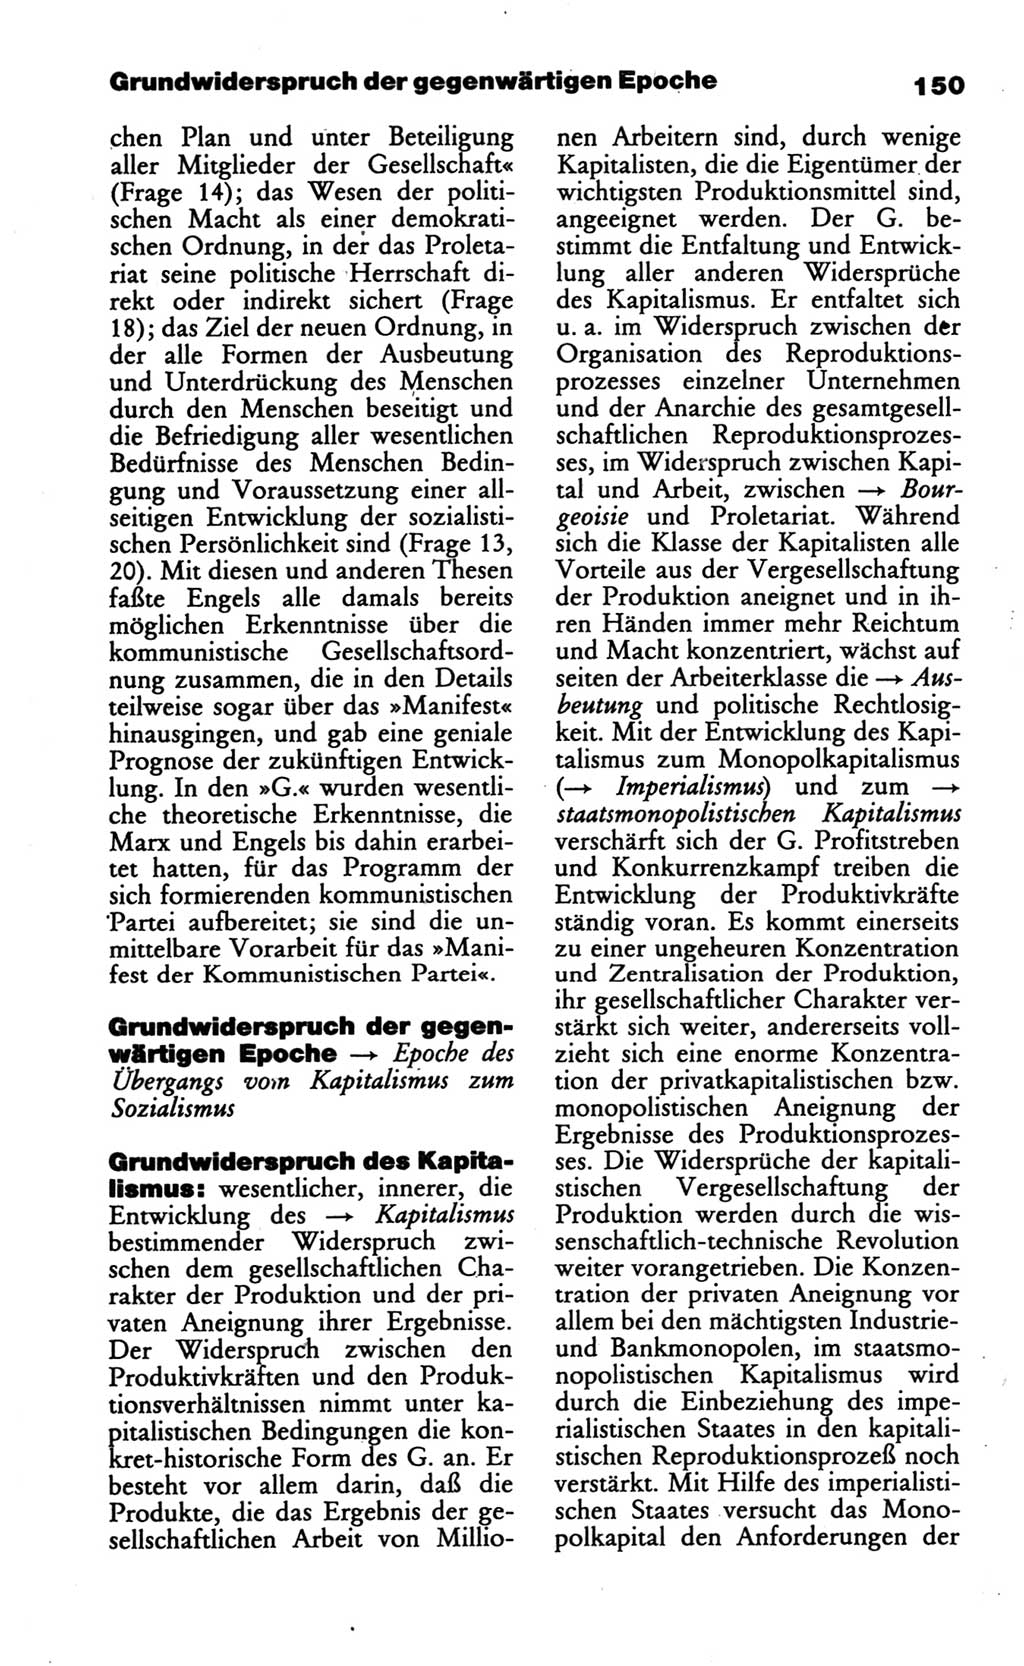 Wörterbuch des wissenschaftlichen Kommunismus [Deutsche Demokratische Republik (DDR)] 1986, Seite 150 (Wb. wiss. Komm. DDR 1986, S. 150)